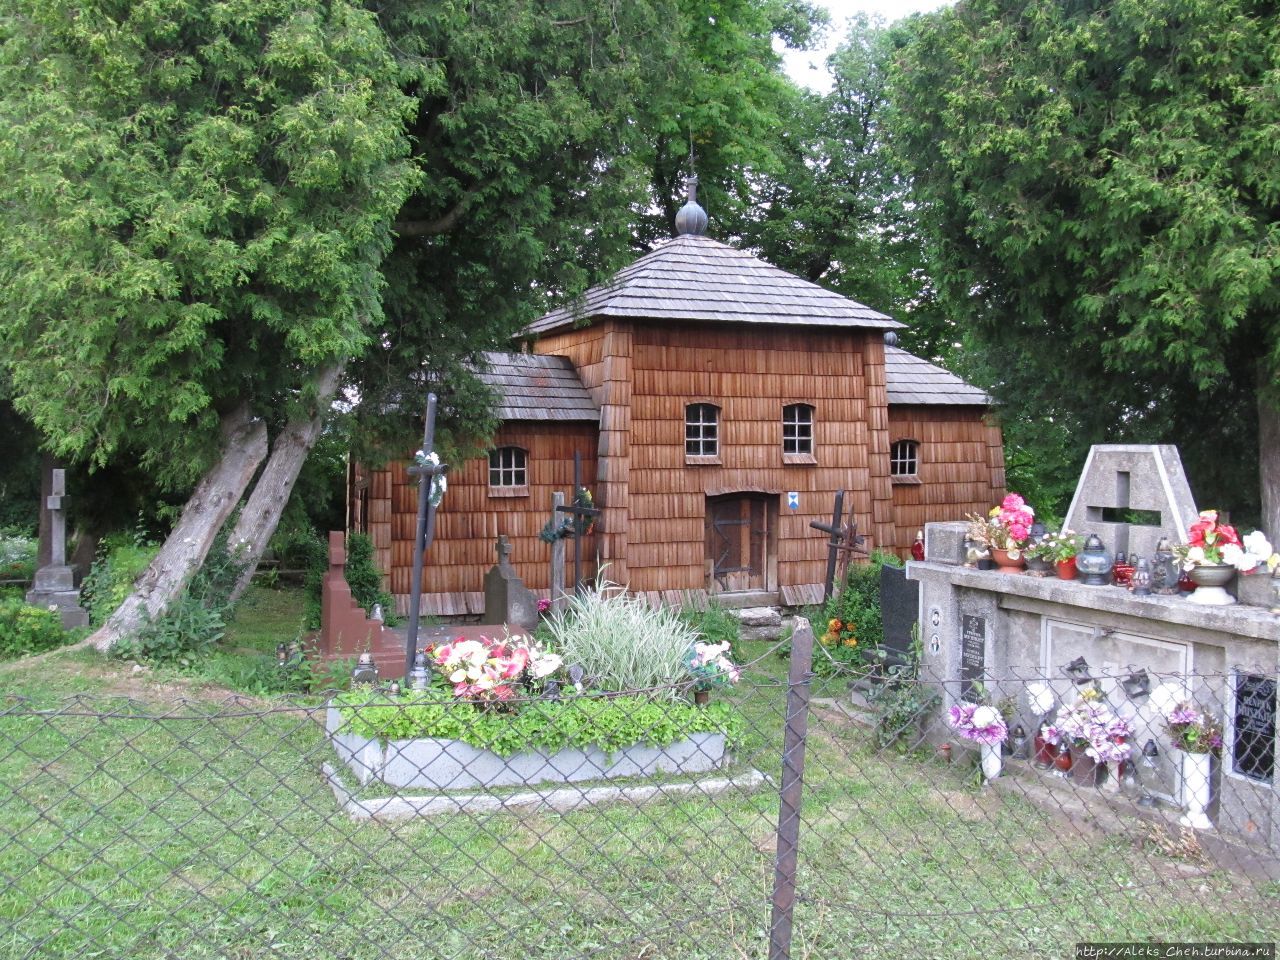 Культовые памятники Пшемышля: старая церковь Пшемысль, Польша